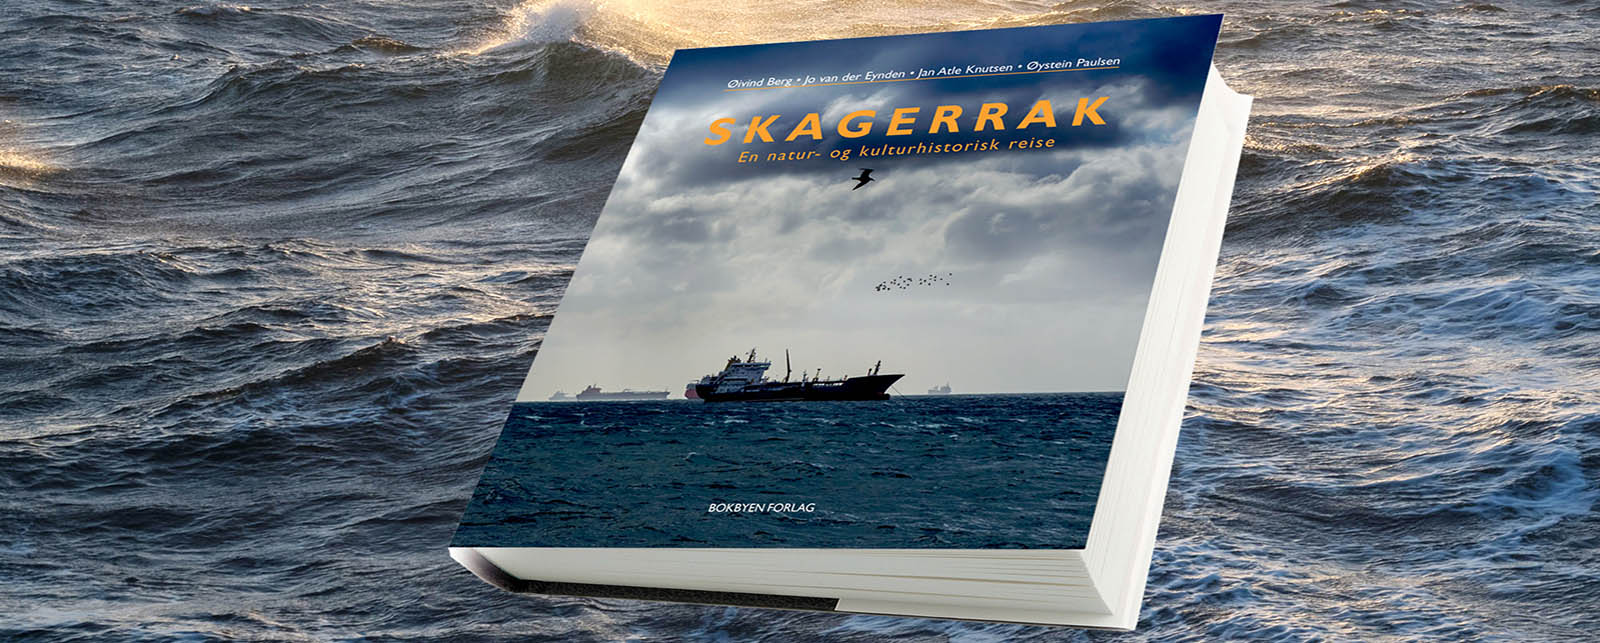 SKAGERRAK En natur- og kulturhistorisk reise av Øivind Berg, Jo van der Eynden, Atle Knutsen og Øystein Paulsen.